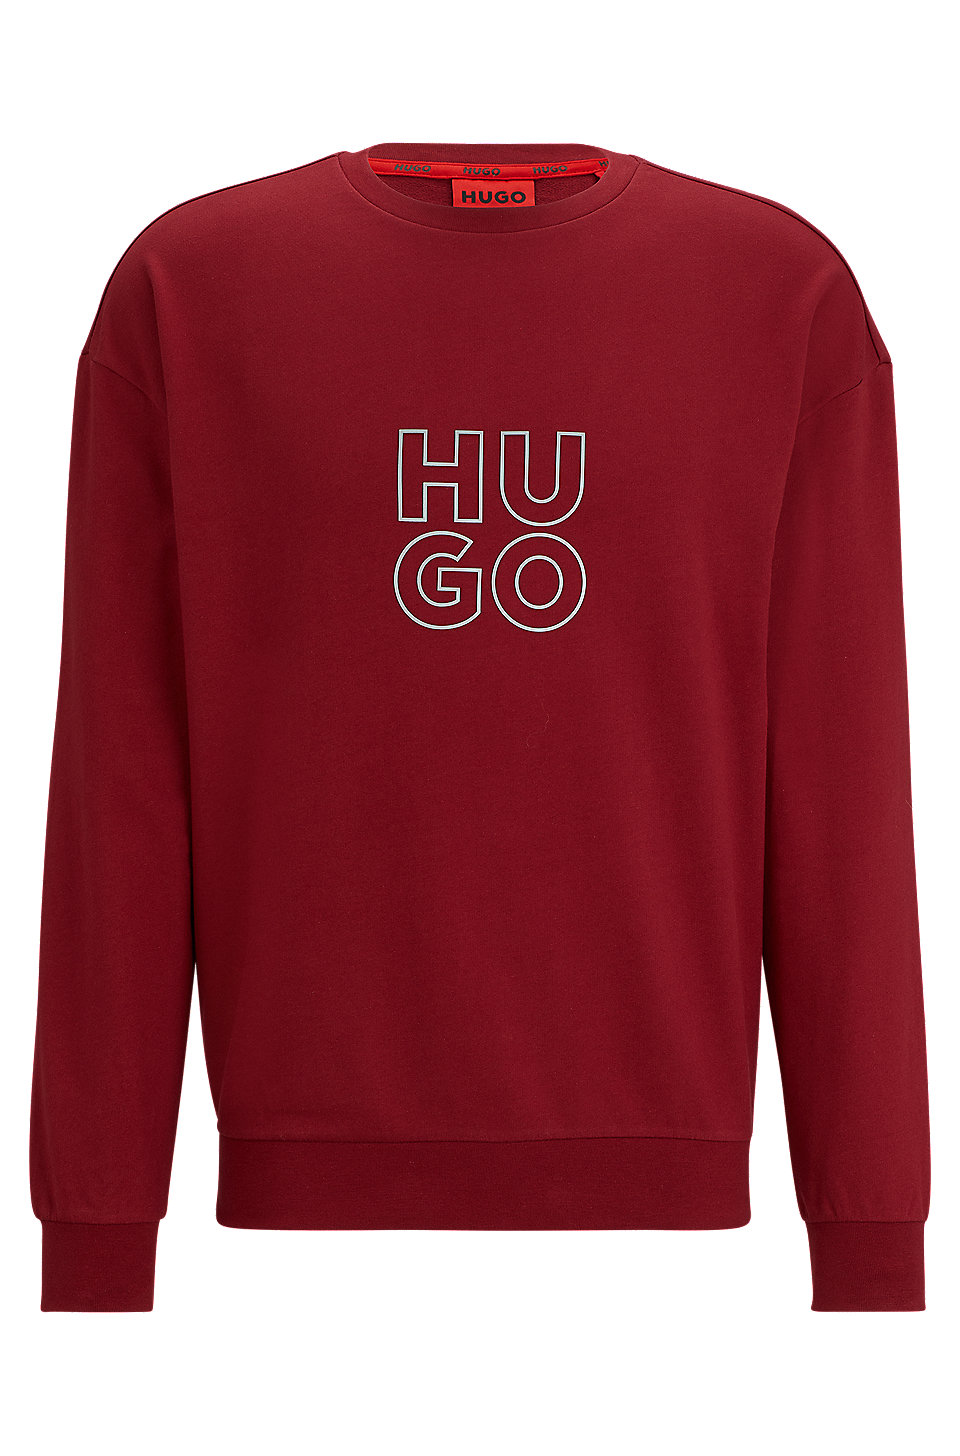 HUGO - Cotton-terry sweatshirt with metallic-effect logo